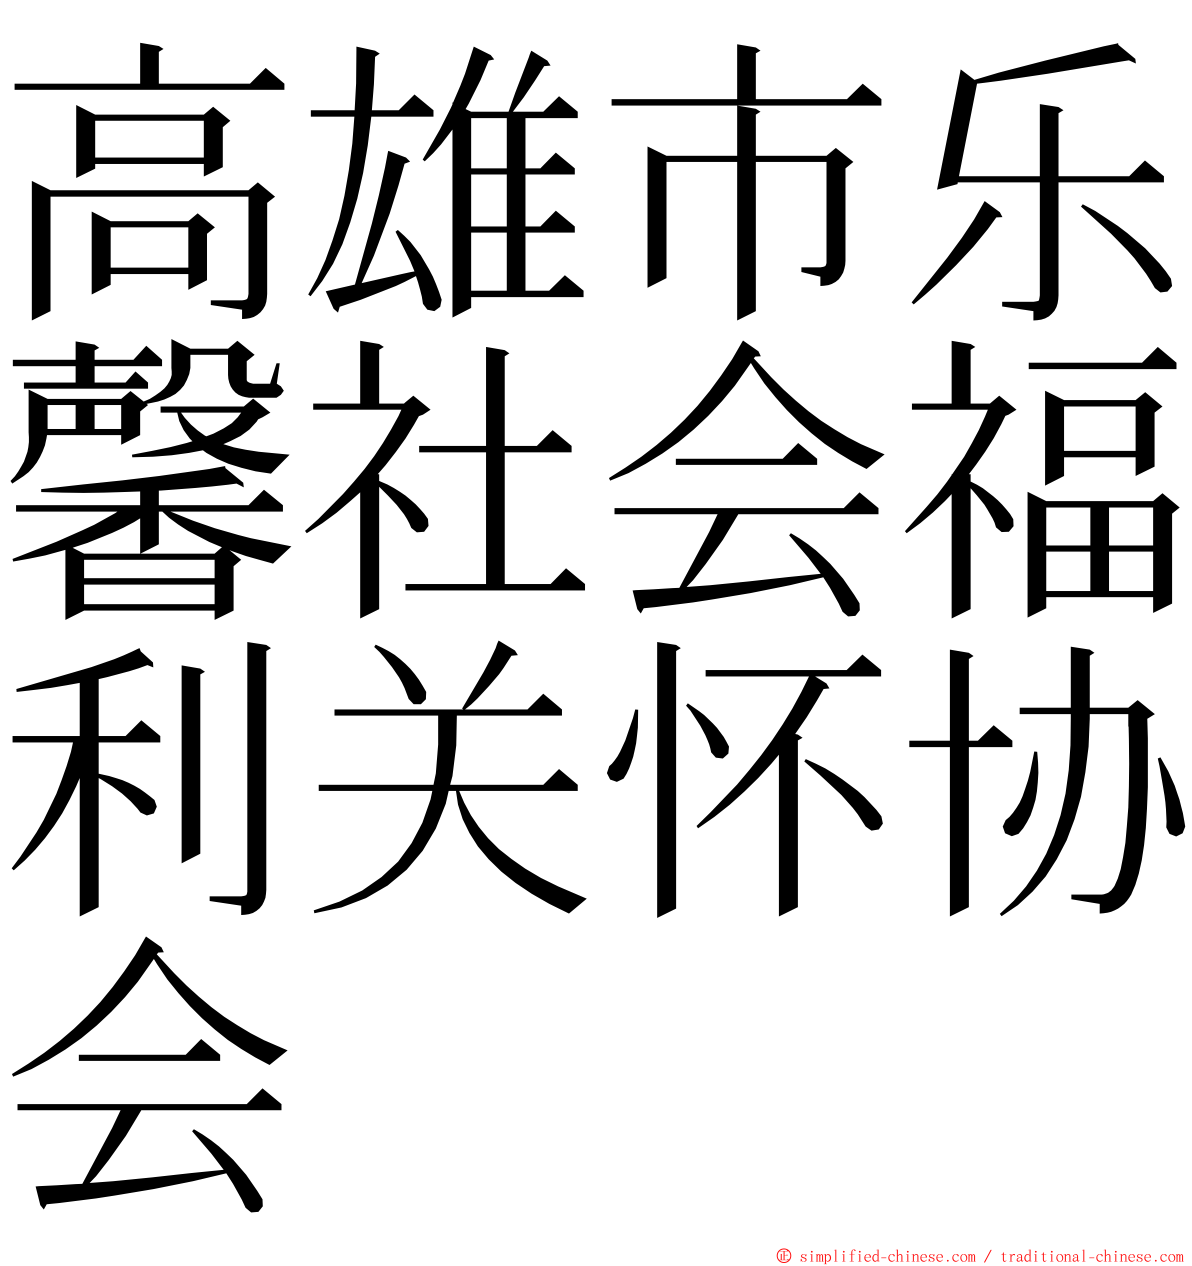 高雄市乐馨社会福利关怀协会 ming font